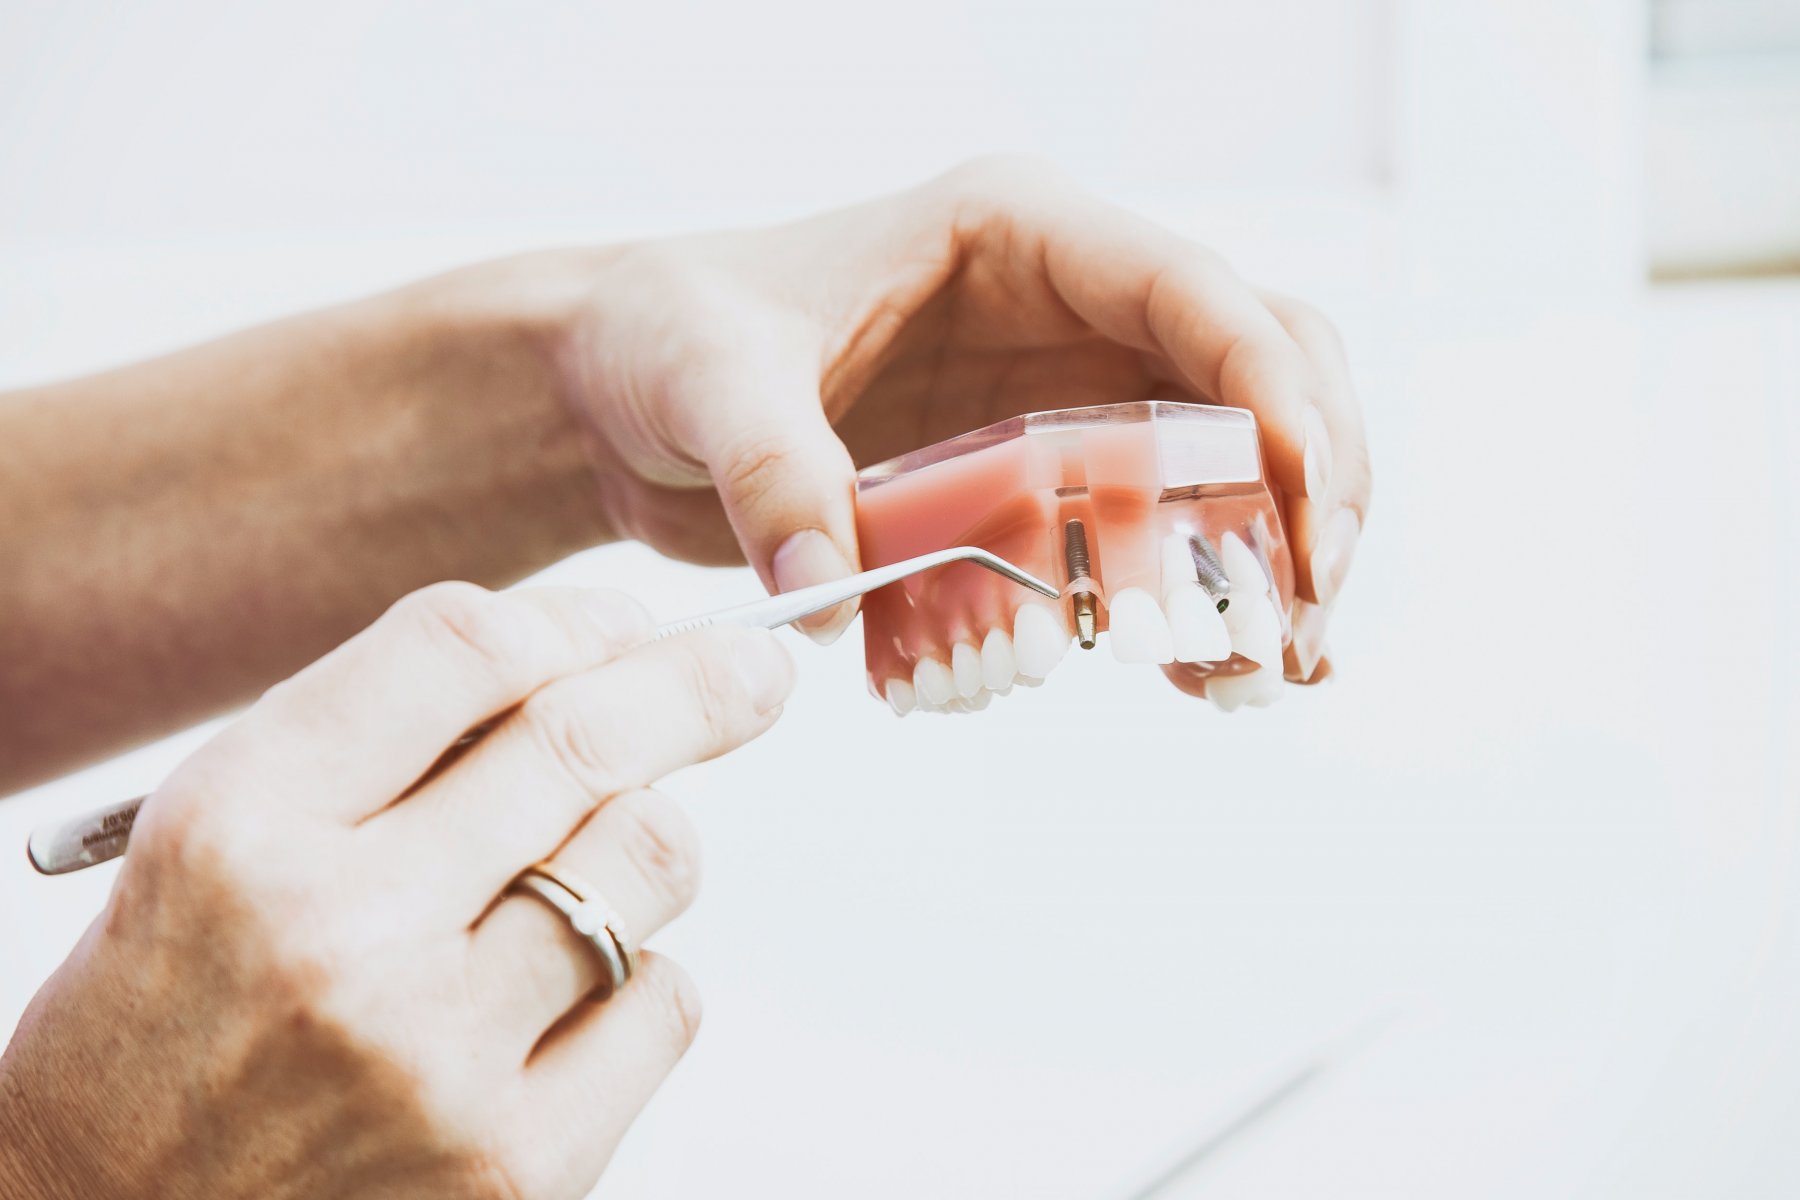 Бесплатно ставить зубные протезы в Подмосковье смогут инвалиды, проживающие в соцучреждениях